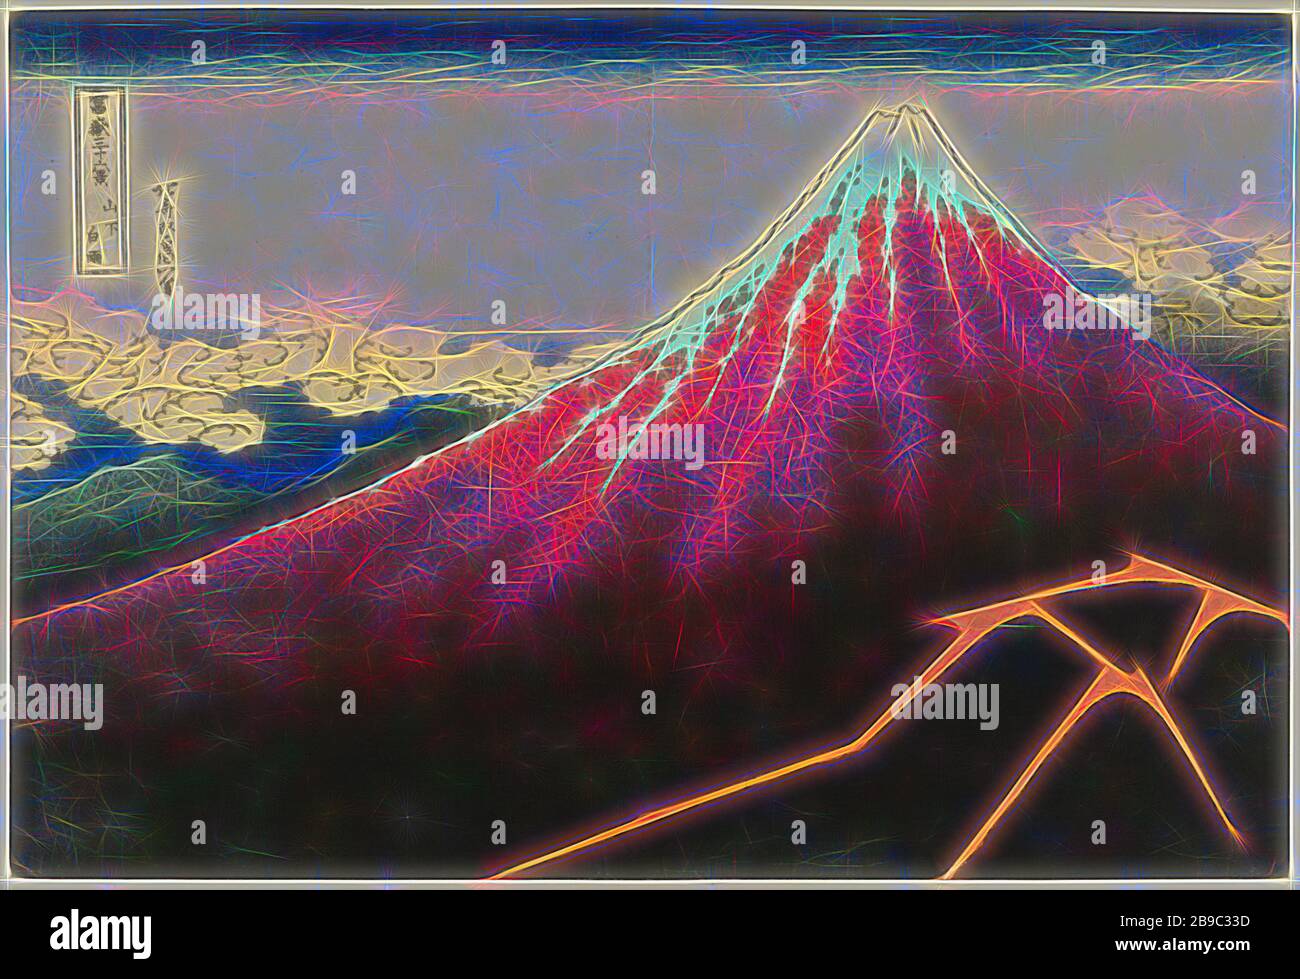 Regensturm am Fuß des Fuji Sanka Hakuu (Titel auf Objekt) 36 Ansichten des Fuji (Serientitel) Fuji Sanjurokkei (Serientitel auf Objekt), Blick auf den Fuji, rot mit weißem Schneebesen und einem dunklen Fuß mit Blitzschlägen, einer Gebirgskette und Wolken im Hintergrund, Fuji, der Berg, Katsushika Hokusai (auf Objekt erwähnt), Japan, 18-18-18-322, Papier, Farbholzschnitt, h 254 mm × w 375 mm, von Gibon neu vorgestellt, Design von warmfröhlichem Leuchten von Helligkeit und Lichtstrahlen. Klassische Kunst mit moderner Note neu erfunden. Fotografie, inspiriert von Futurismus, mit dynamischer Energie Stockfoto